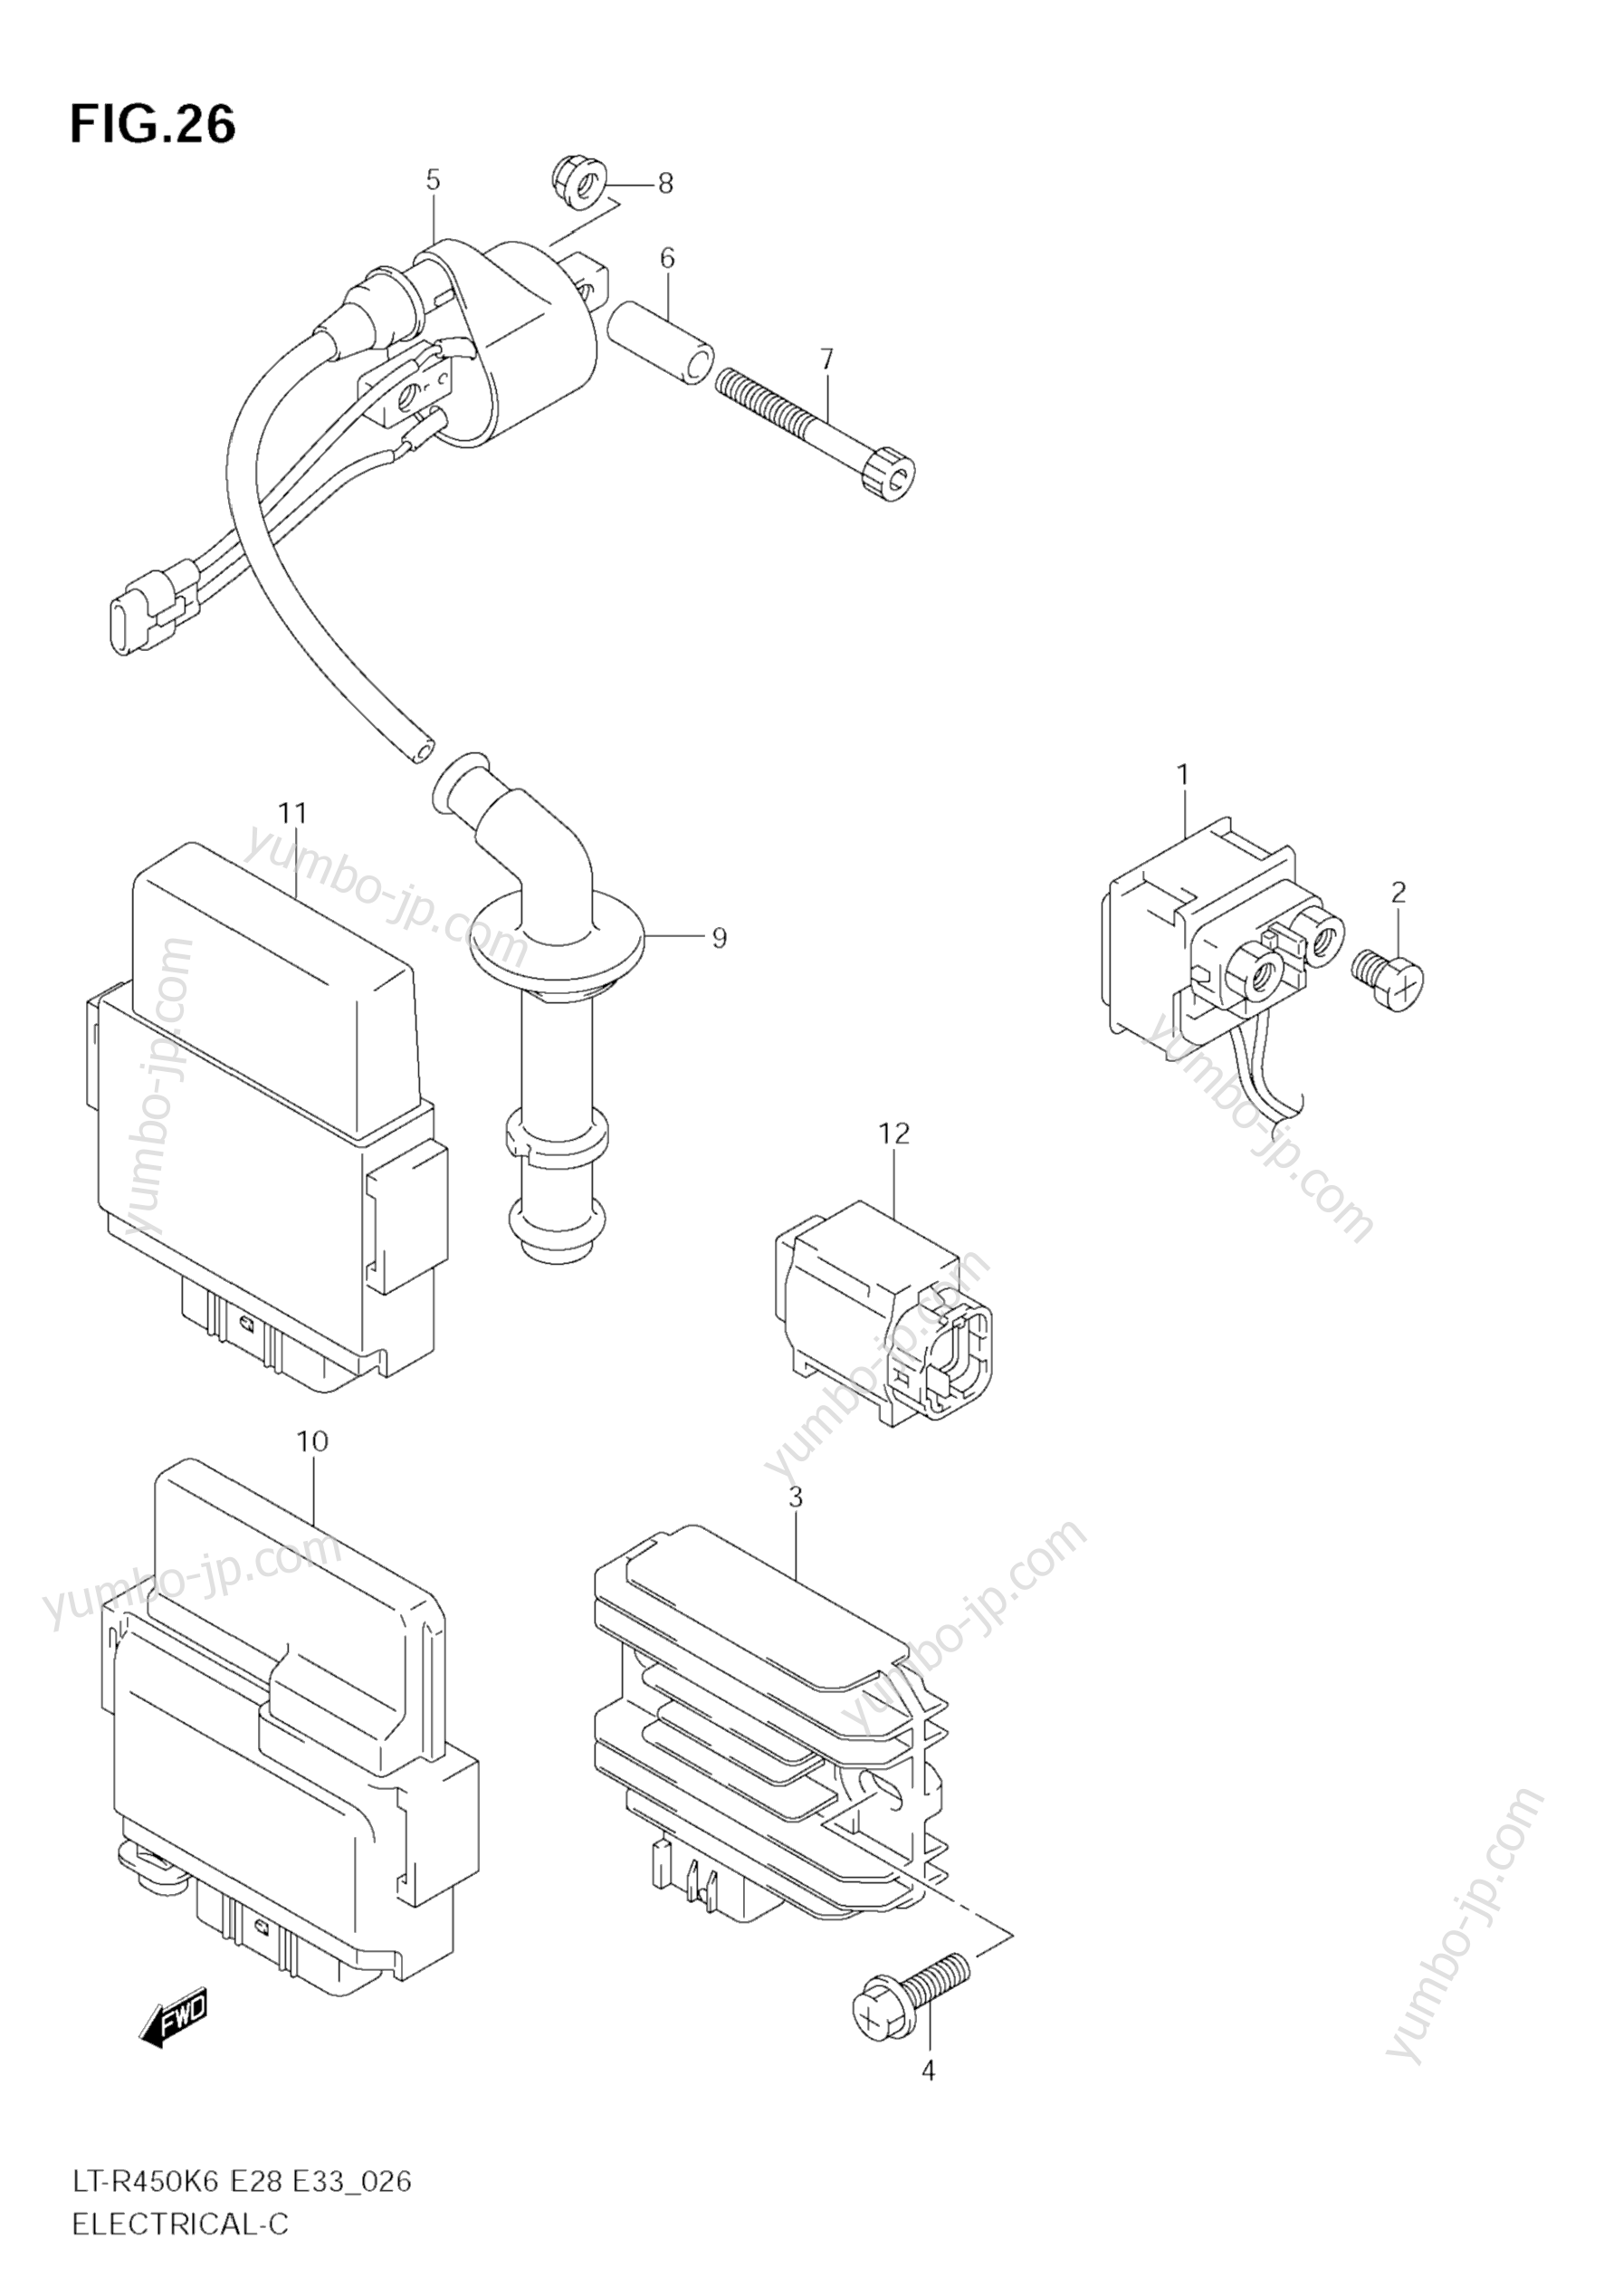 Electrical for ATVs SUZUKI QuadRacer (LT-R450Z) 2006 year